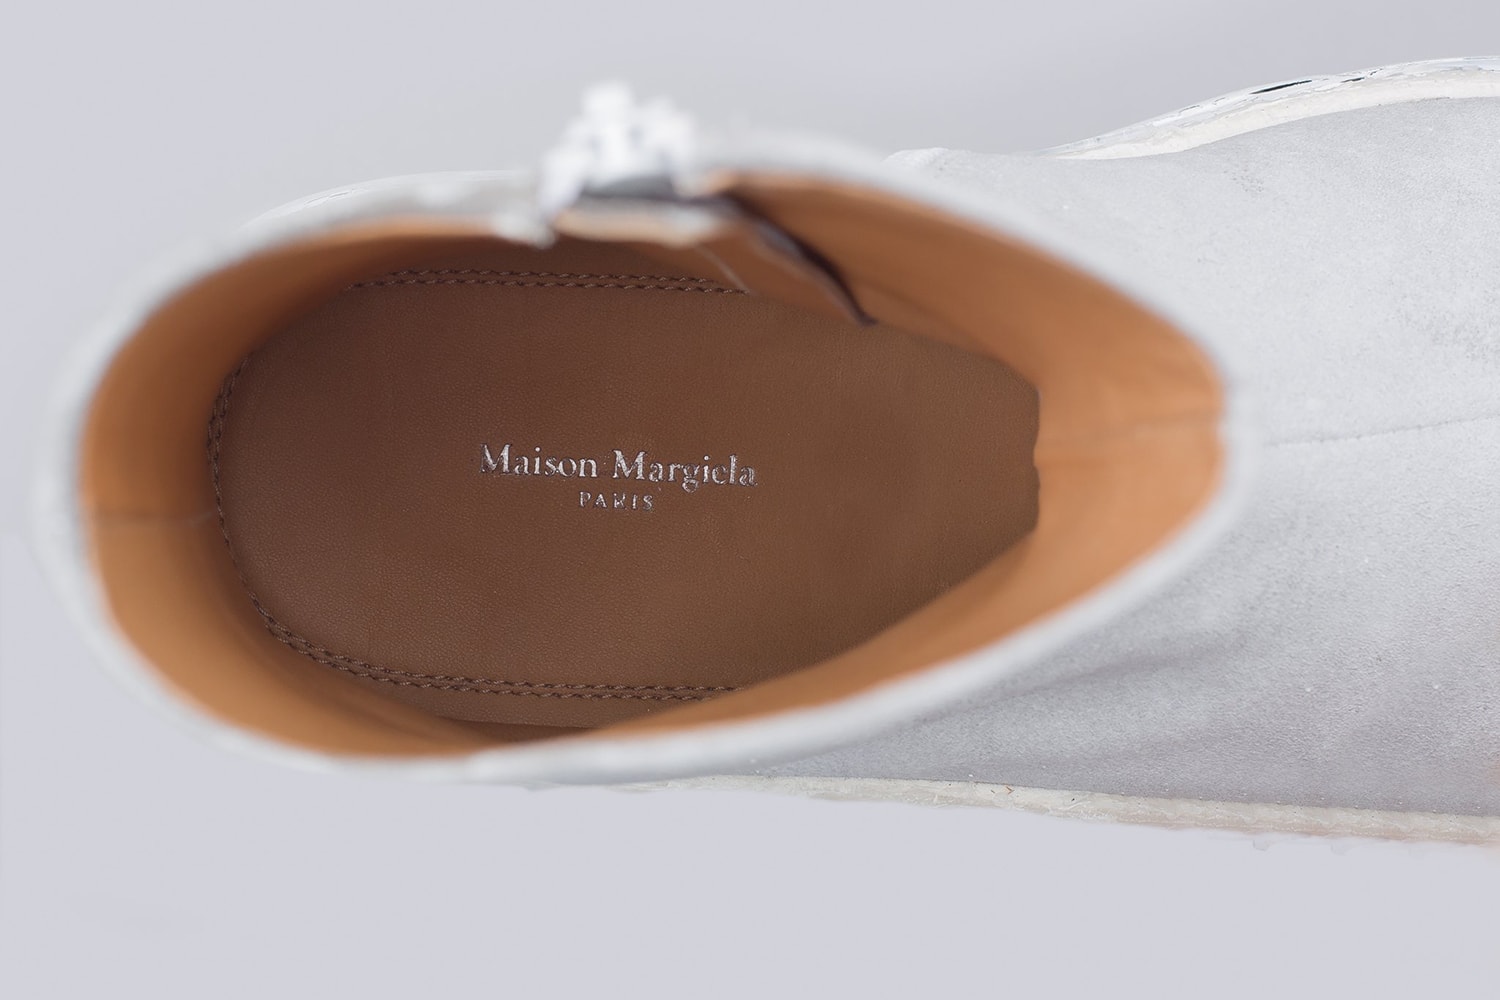 Maison Margiela Tabi Fusion Sneaker fall winter 2018 sneakers footwear release info tabi boot sockrunner